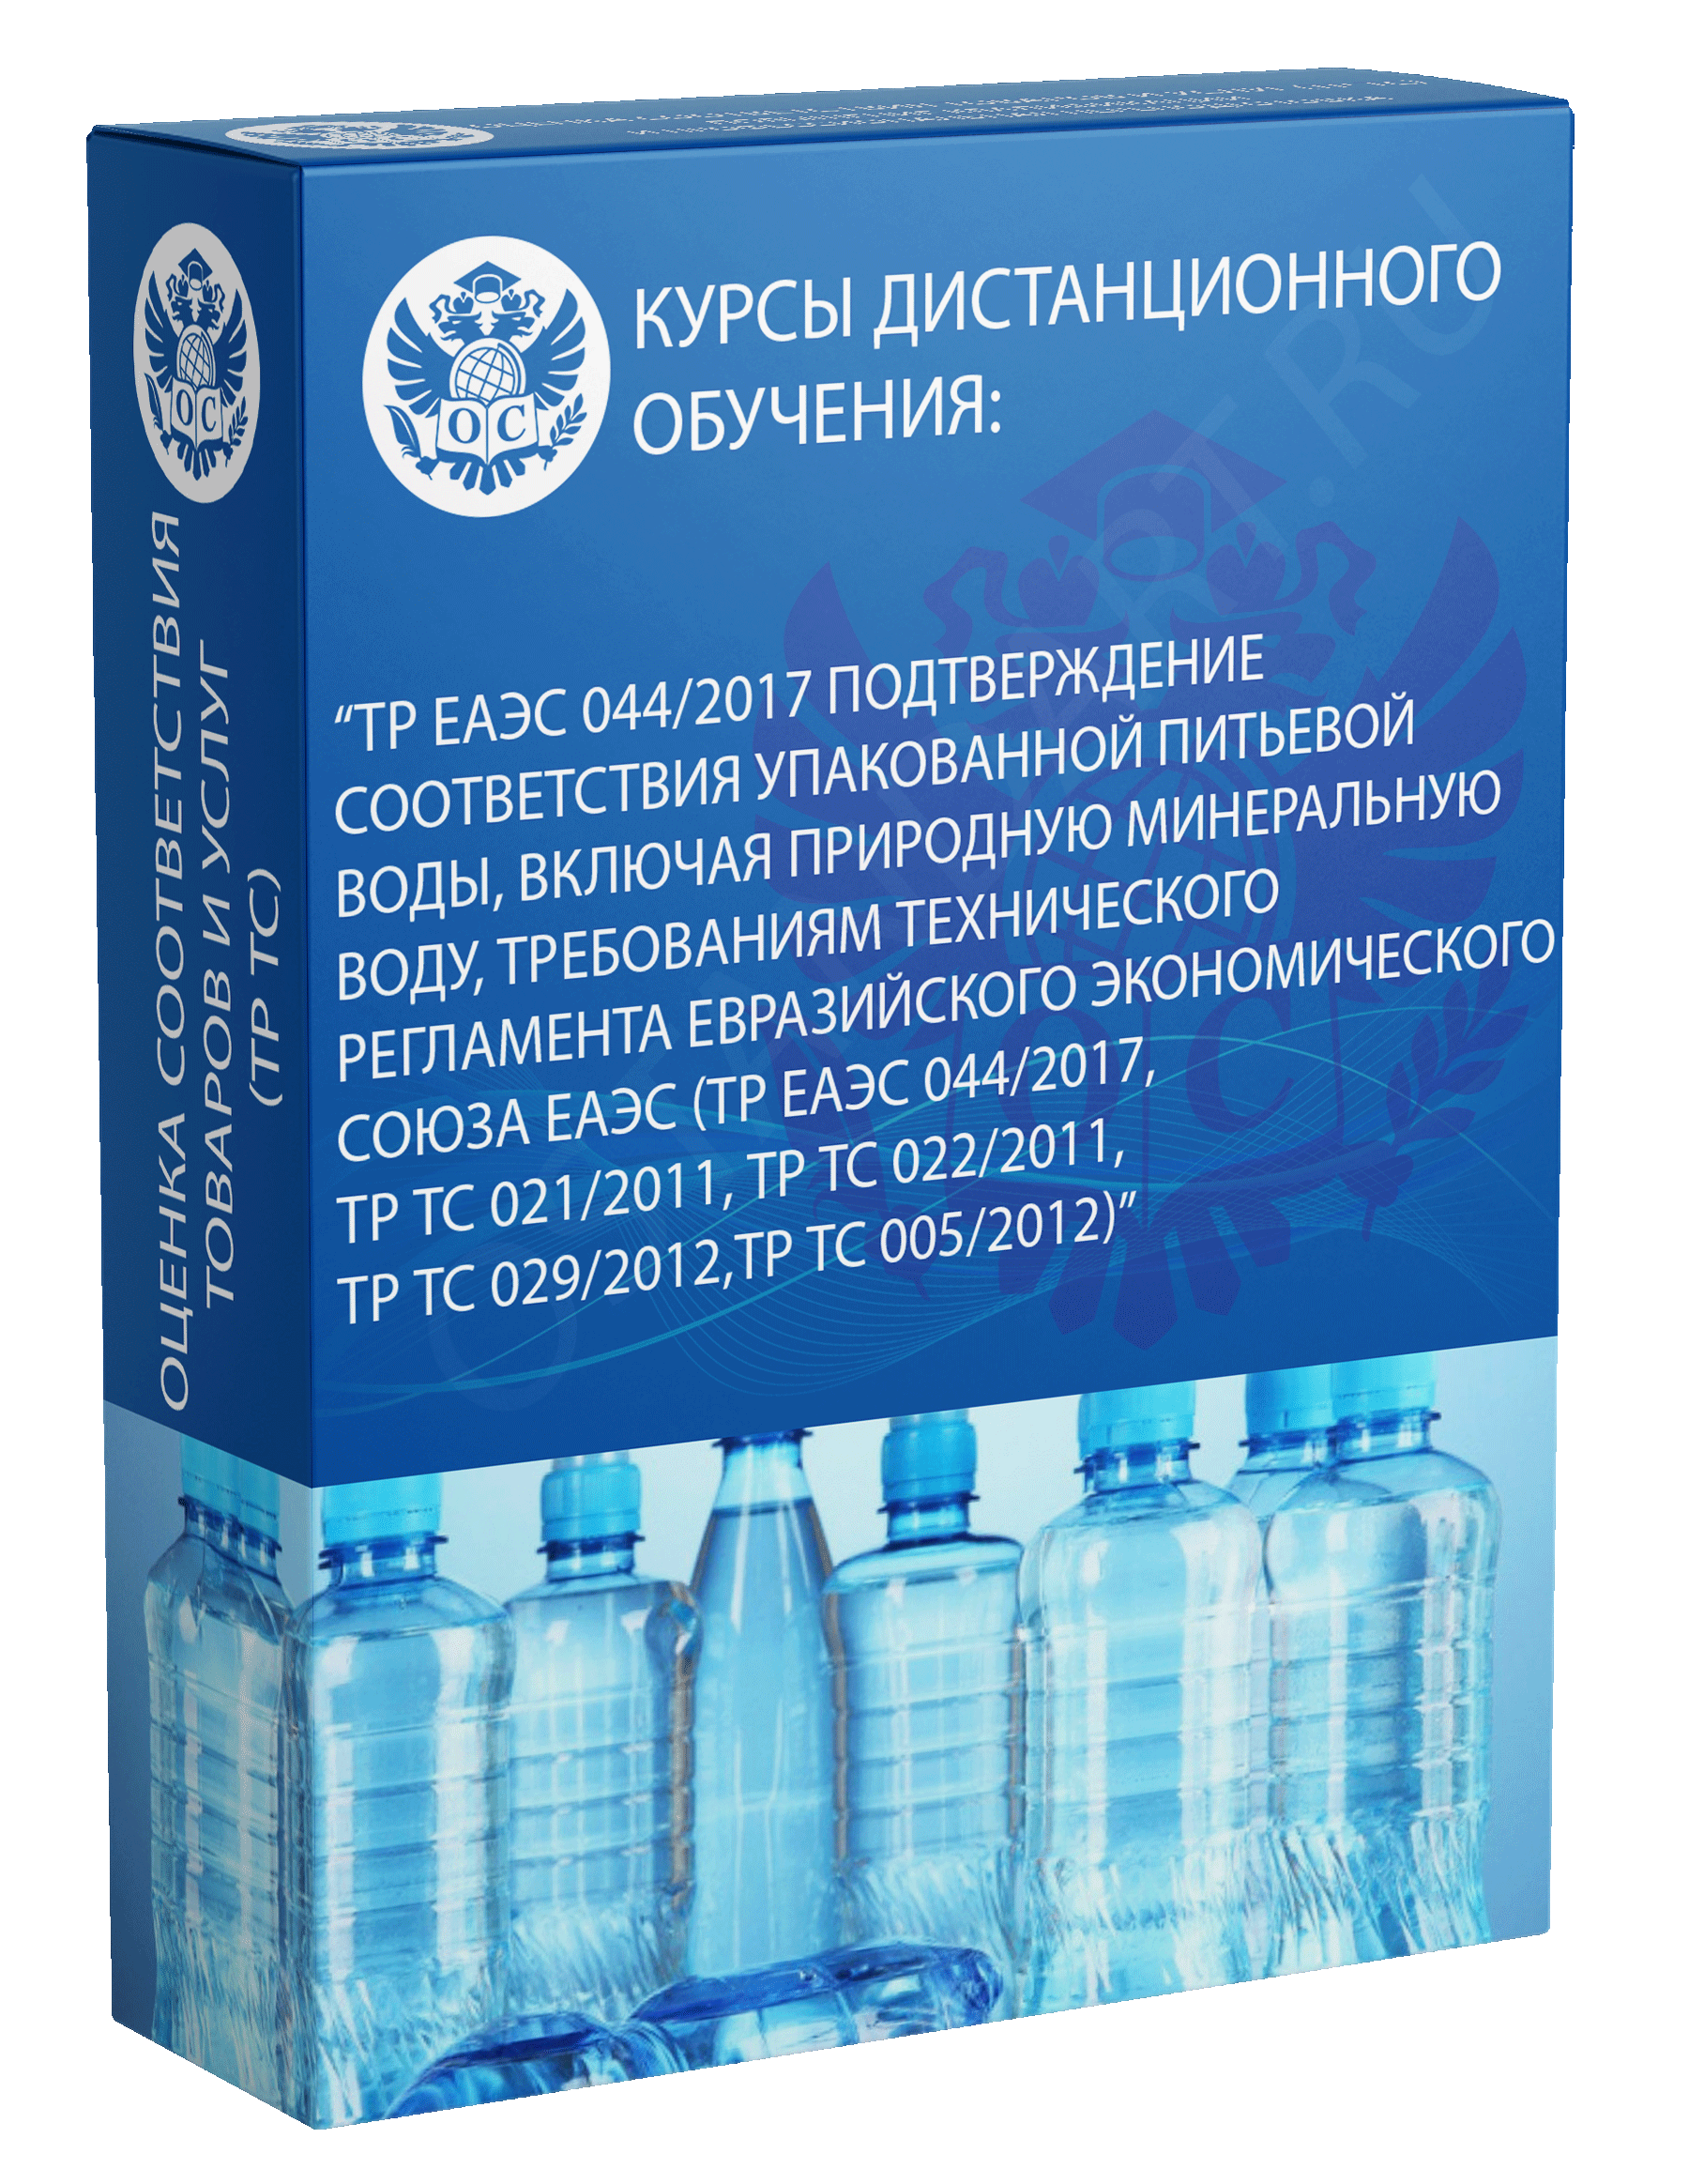 ТР ЕАЭС 044/2017 Подтверждение соответствия упакованной питьевой водытребованиям технического регламента ЕАЭС курс обучения